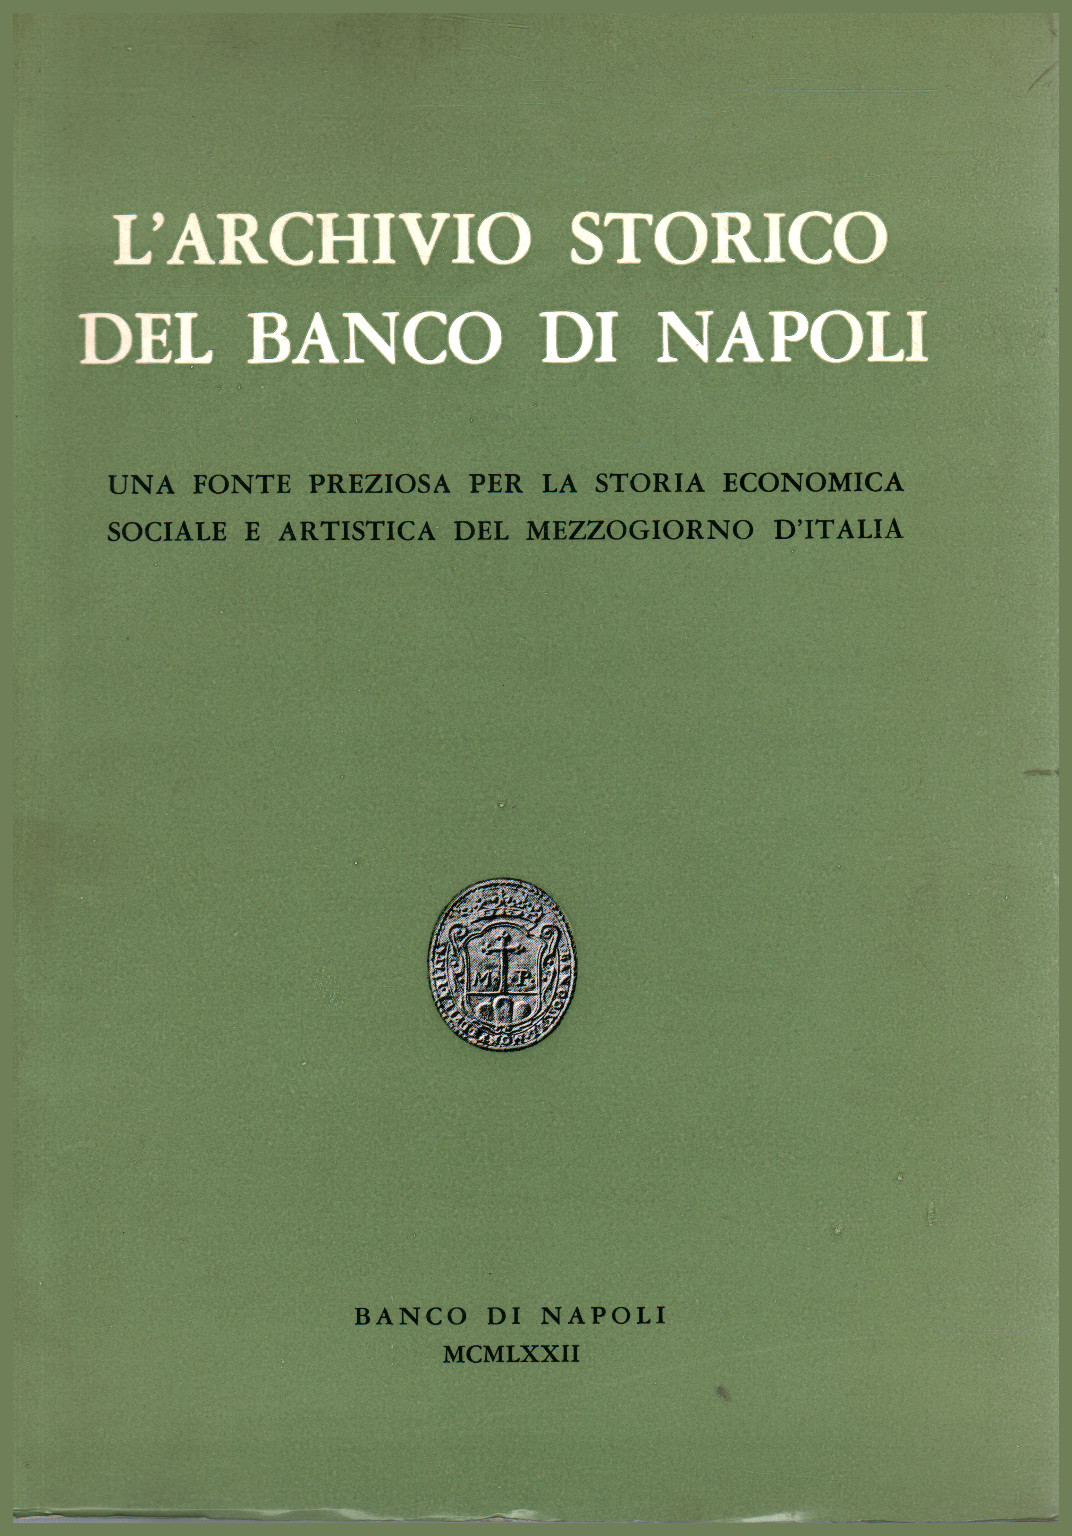 L Historisches Archiv des Banco di Napoli, s.zu.